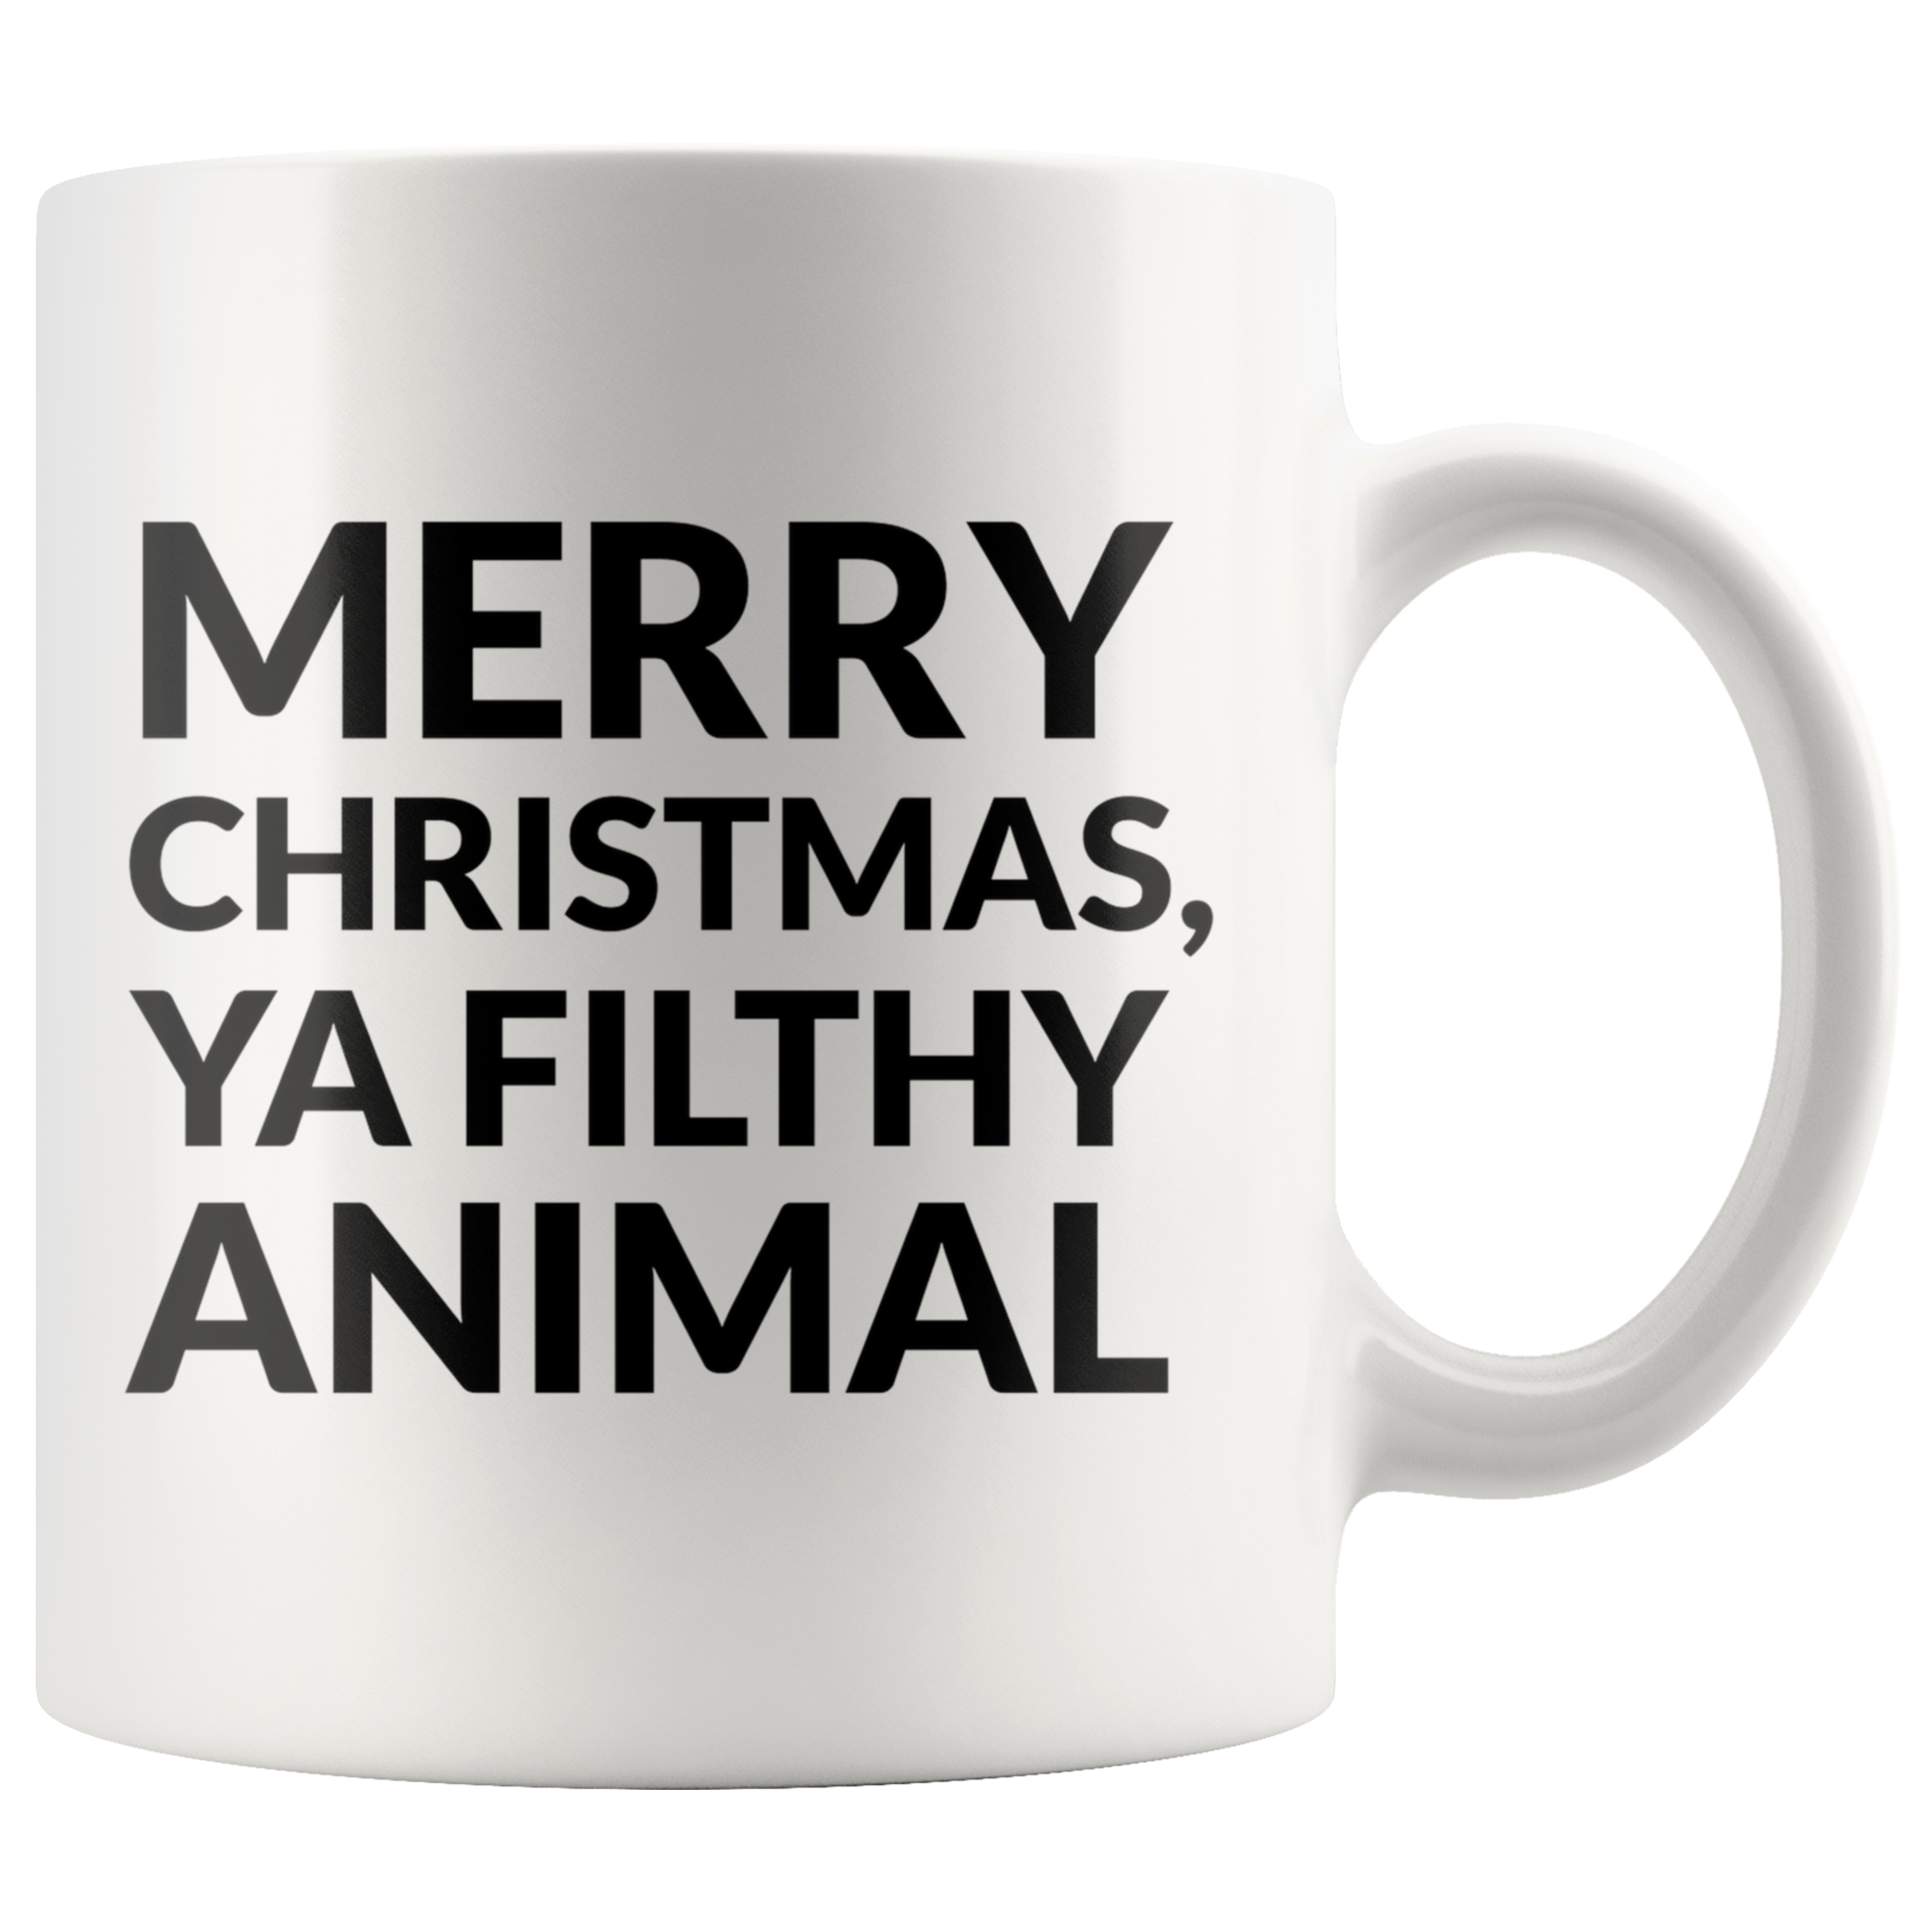 Ya Filthy Animal Coffee Mug